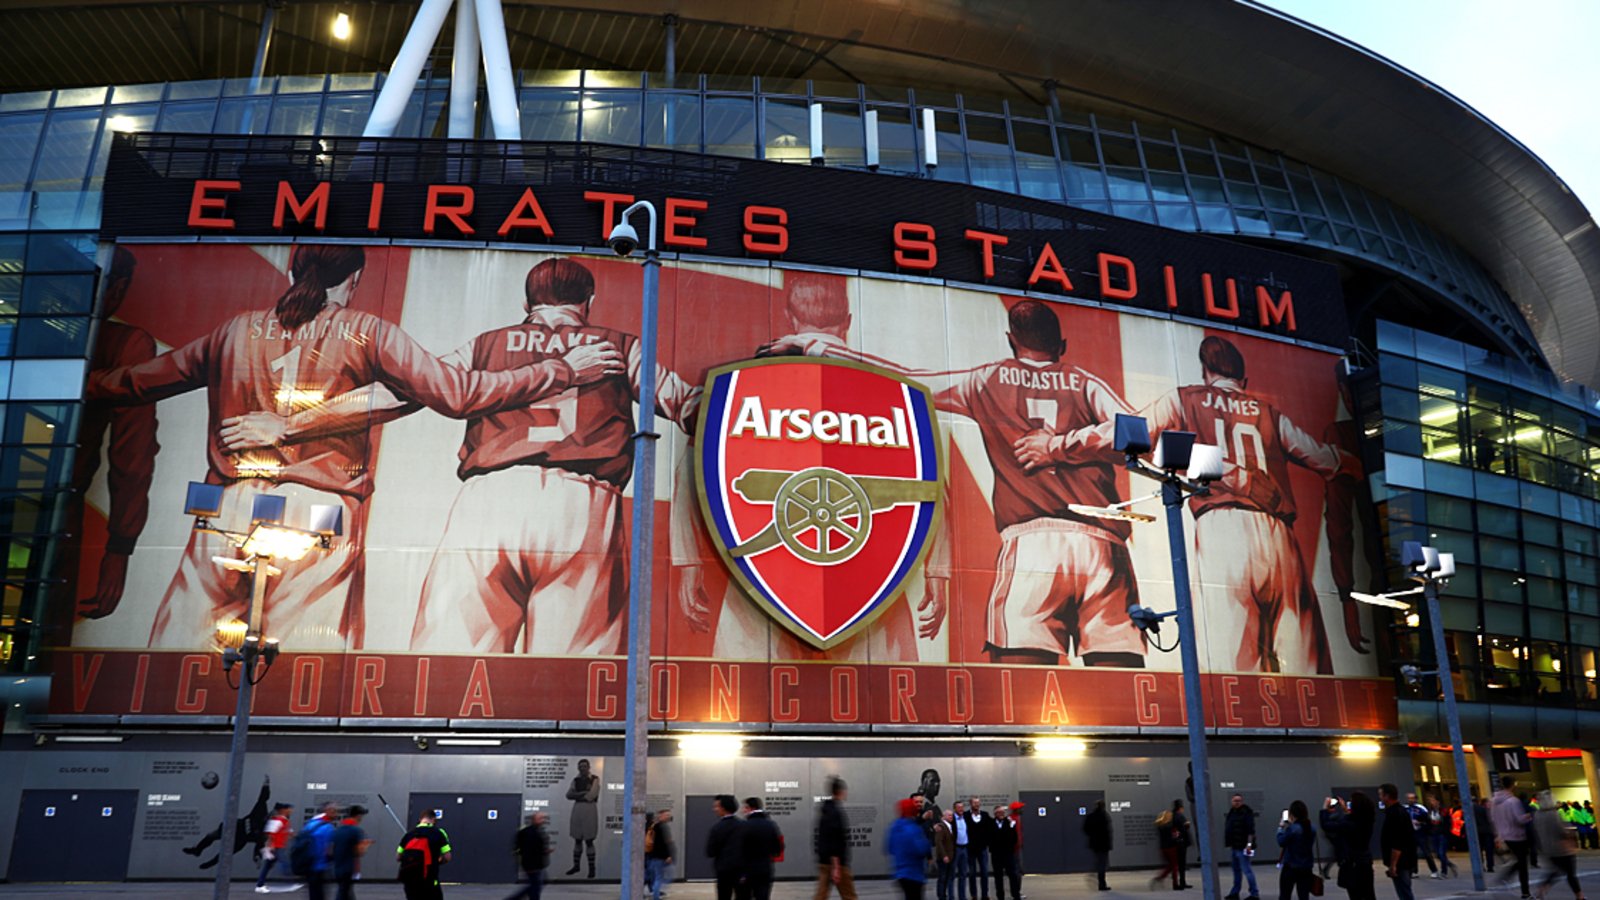 Events at Emirates Stadium | Emirates Stadium | News | Arsenal.com